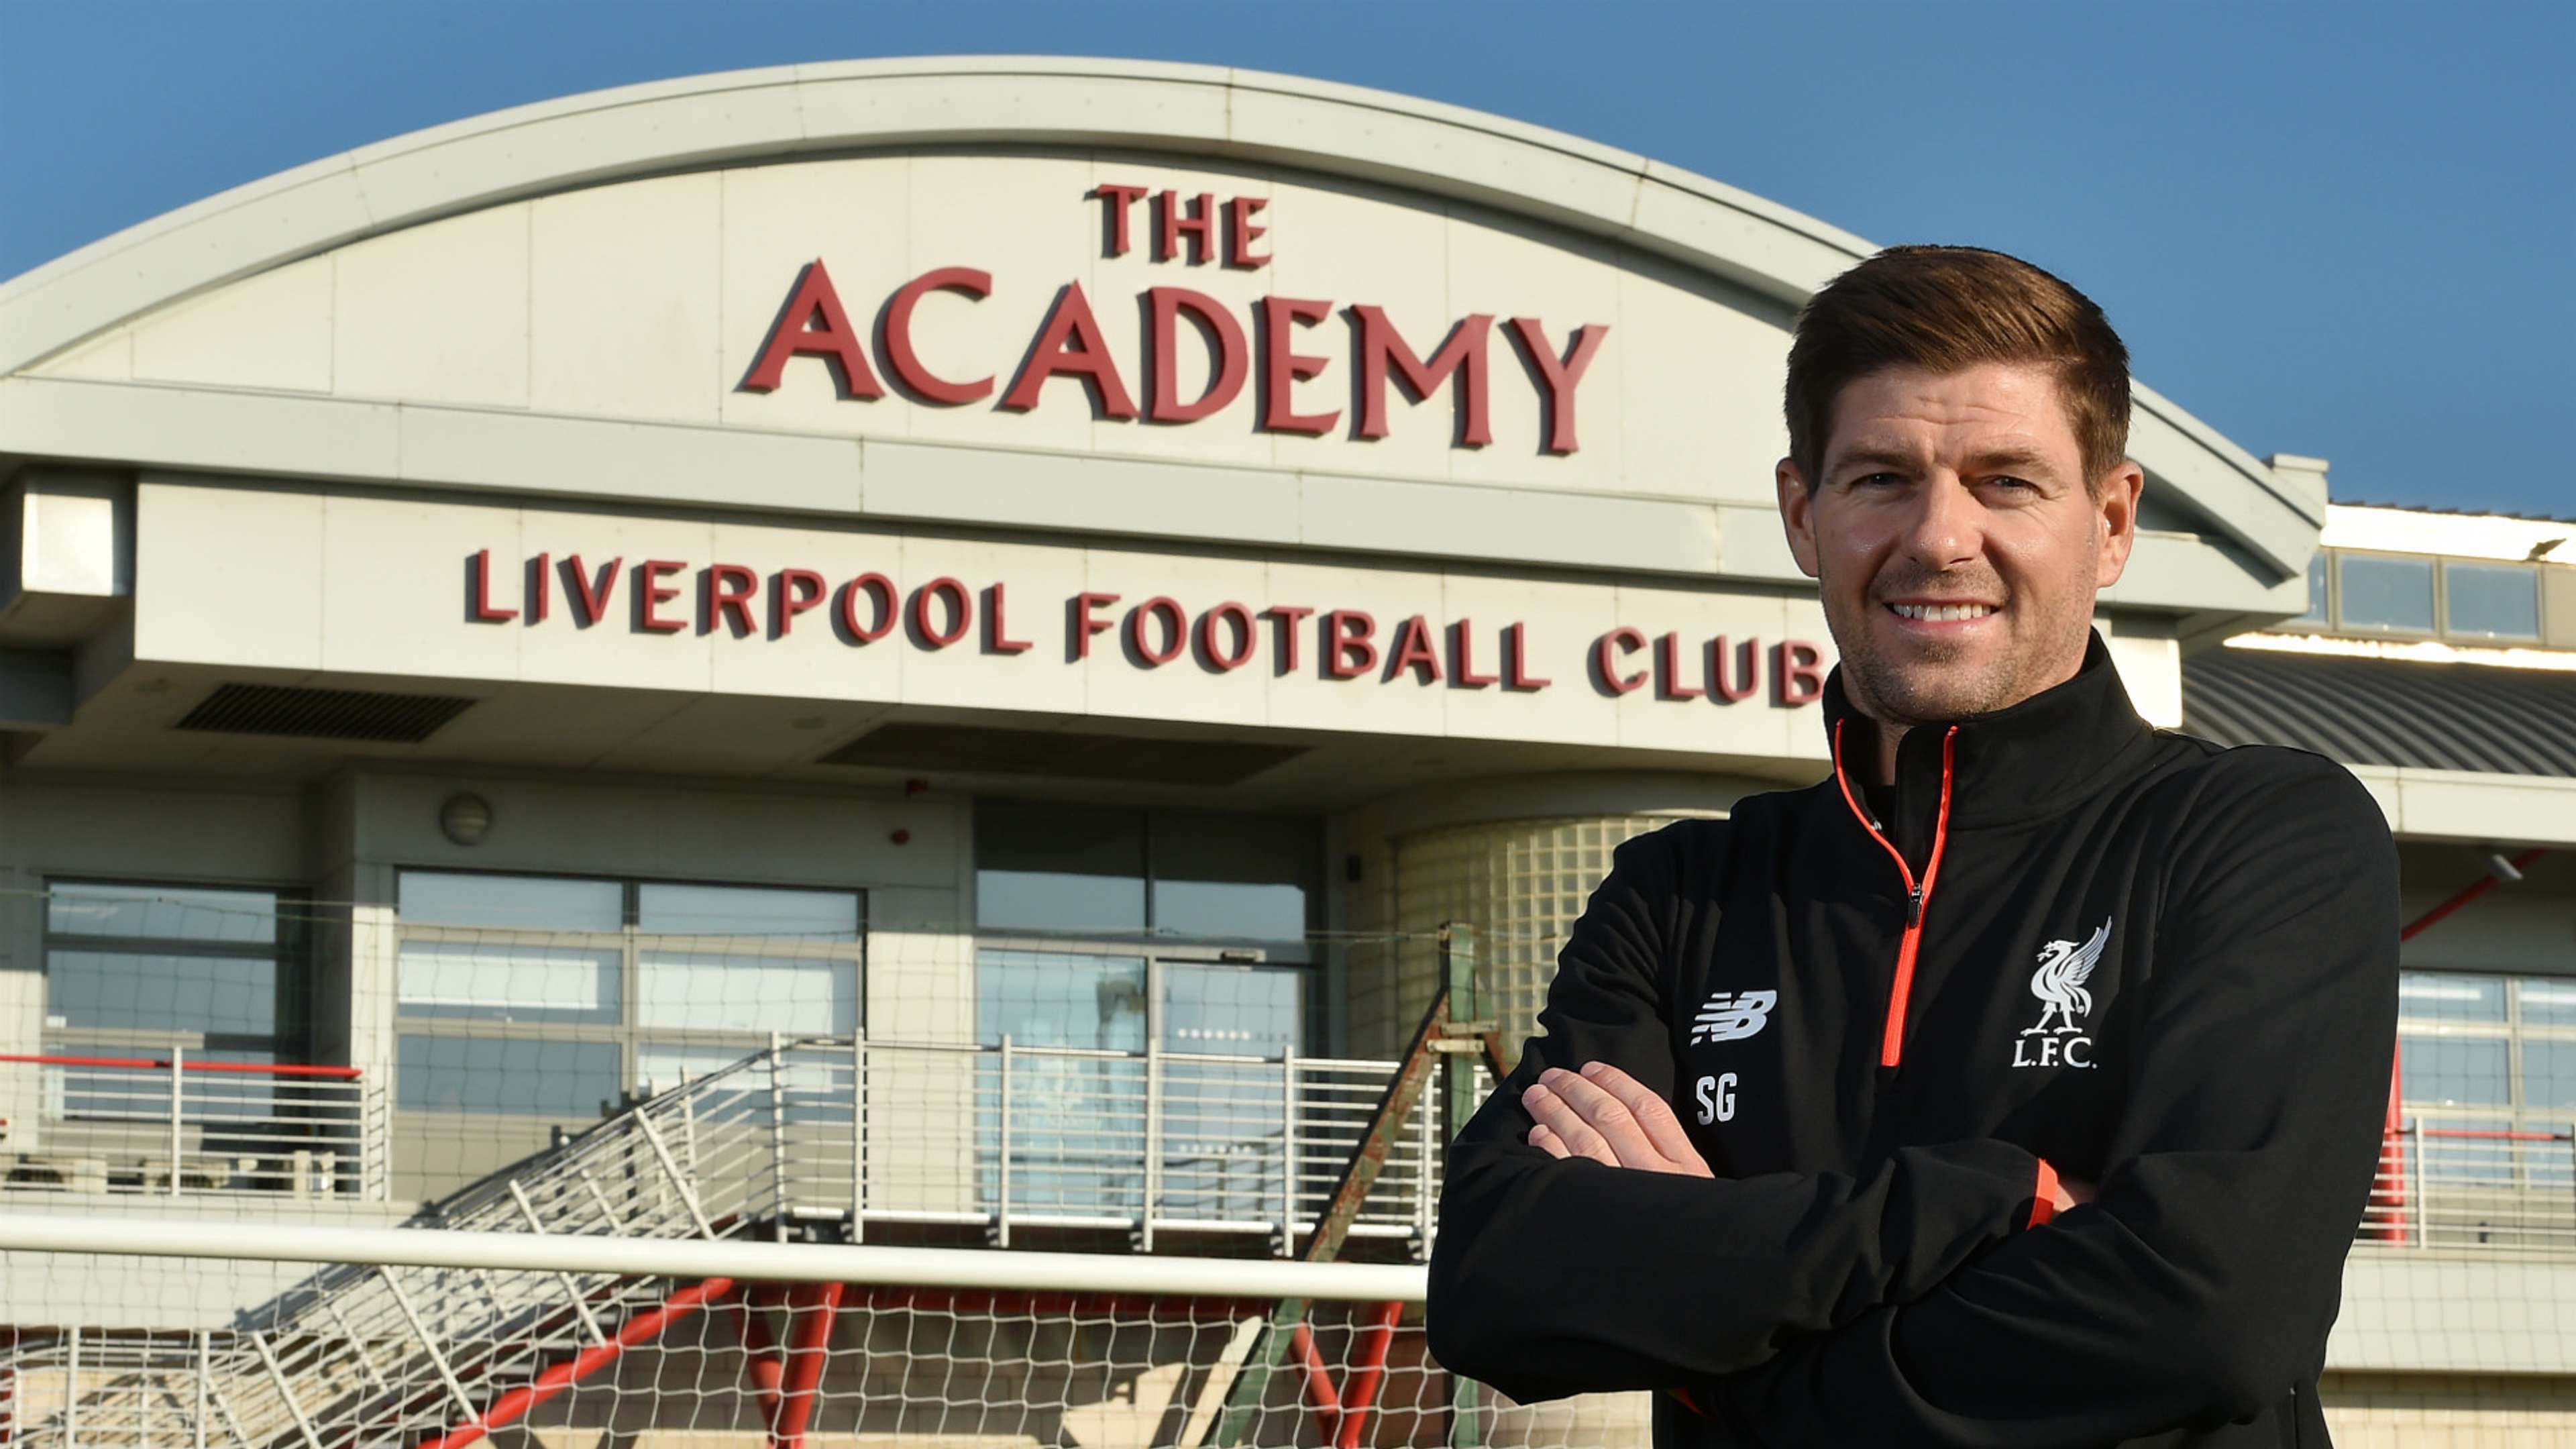 HD Steven Gerrard Liverpool